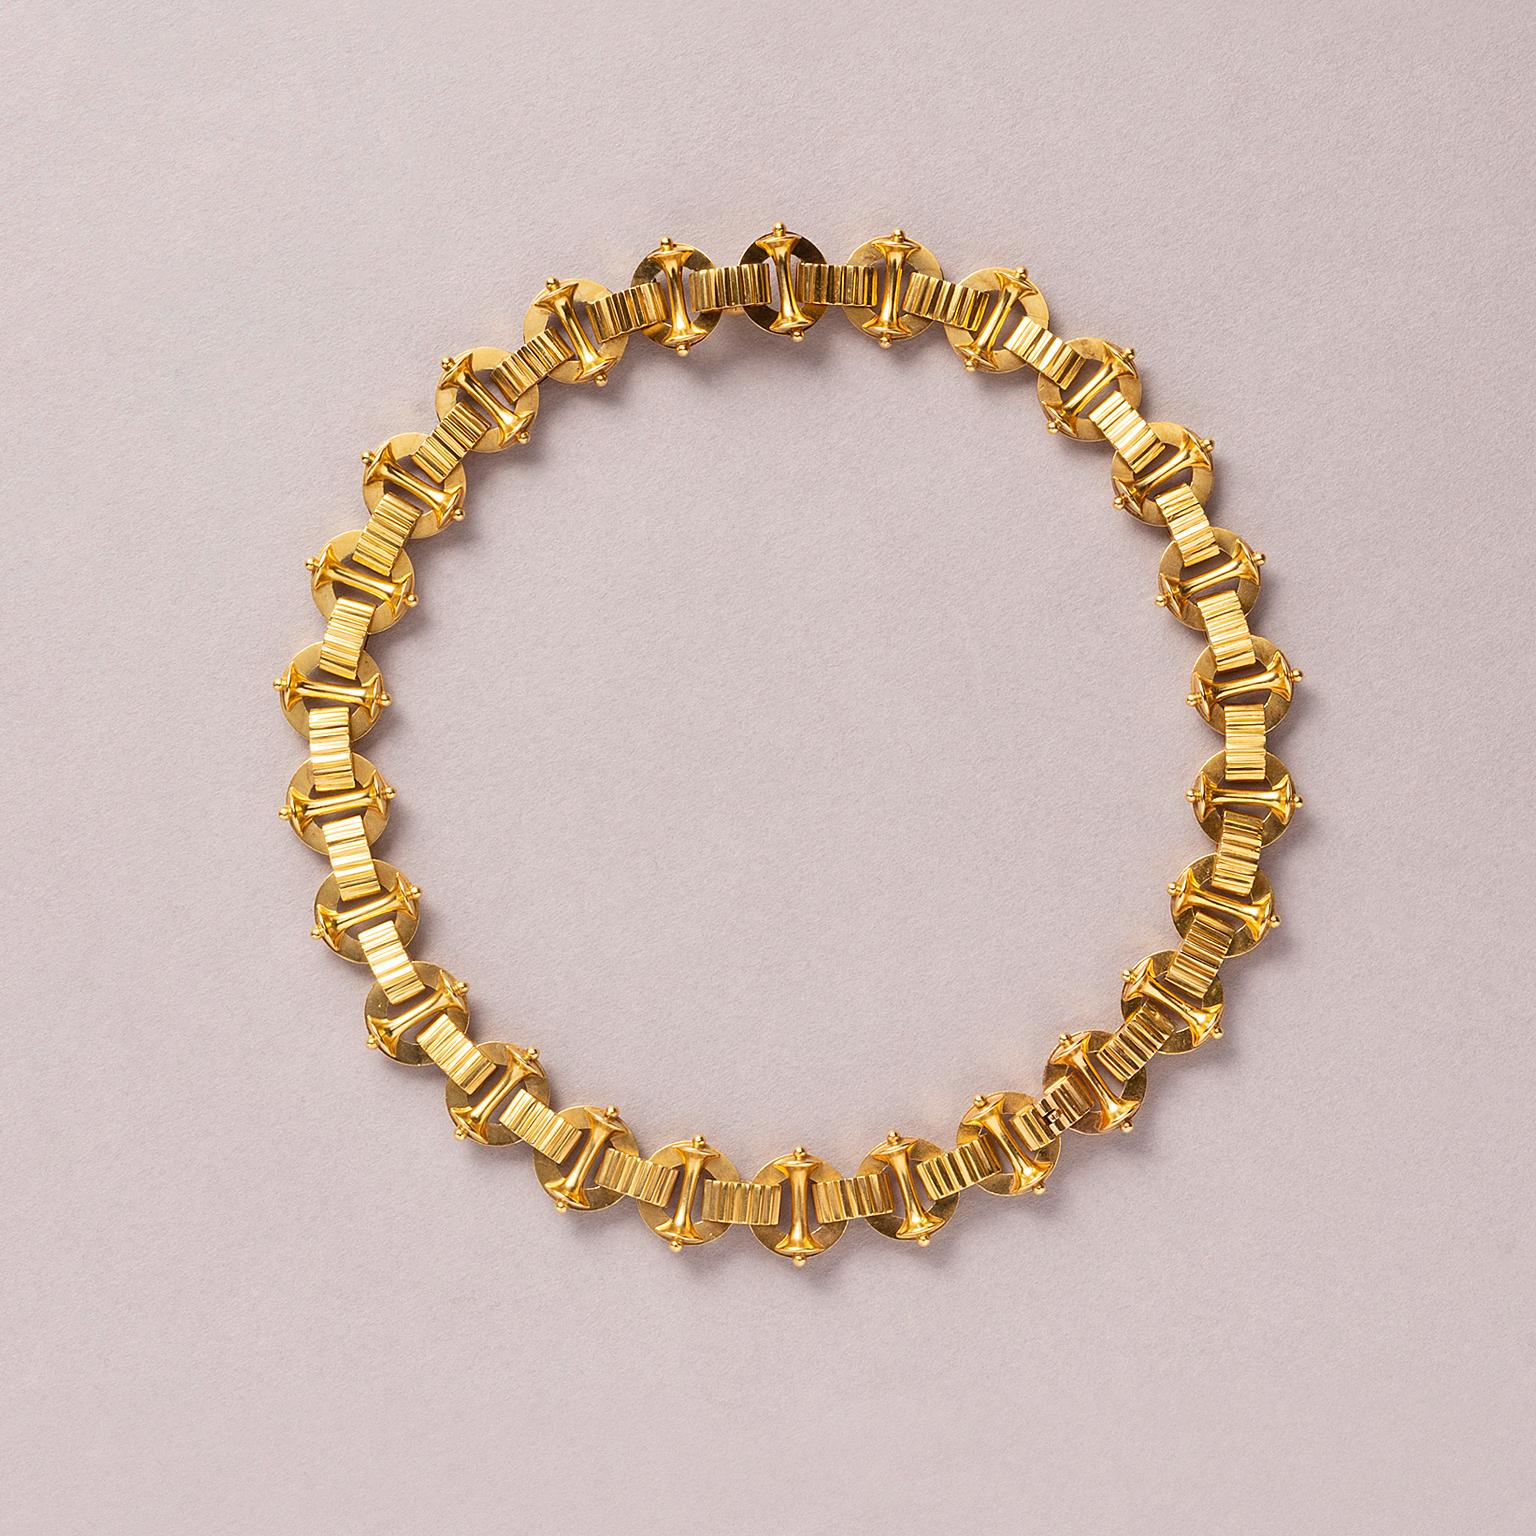 Eine viktorianische Halskette aus 15 Karat Gold mit reichhaltig gearbeiteten Gliedern, England, um 1890. 

Gewicht: 38,69 Gramm
Länge: 39,5 cm
Breite: 1,5 cm